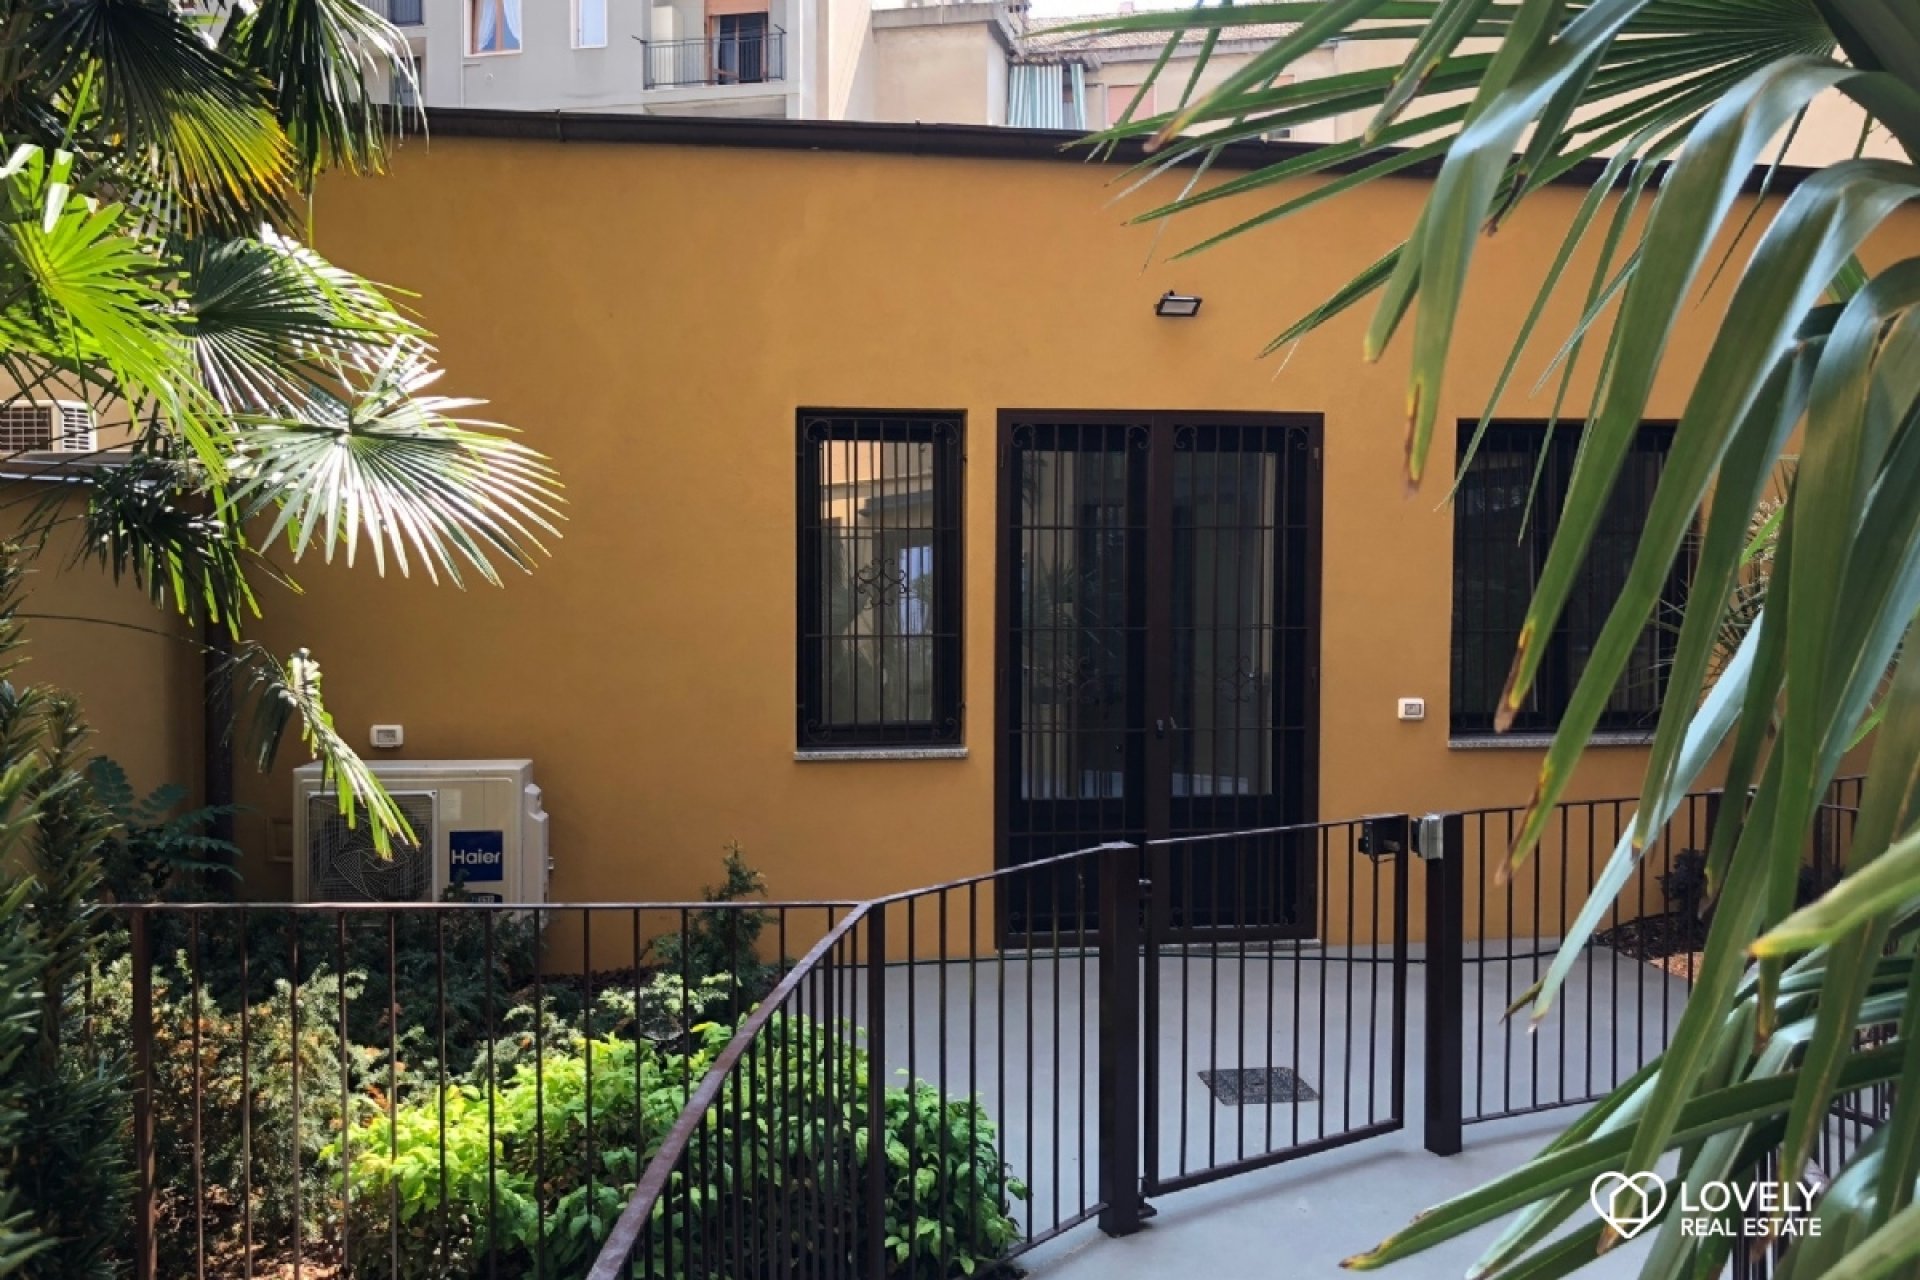 Vendita Appartamento Milano - BILOCALE INDIPENDENTE CON GIARDINO PRIVATO Località Loreto - Piola - Lambrate